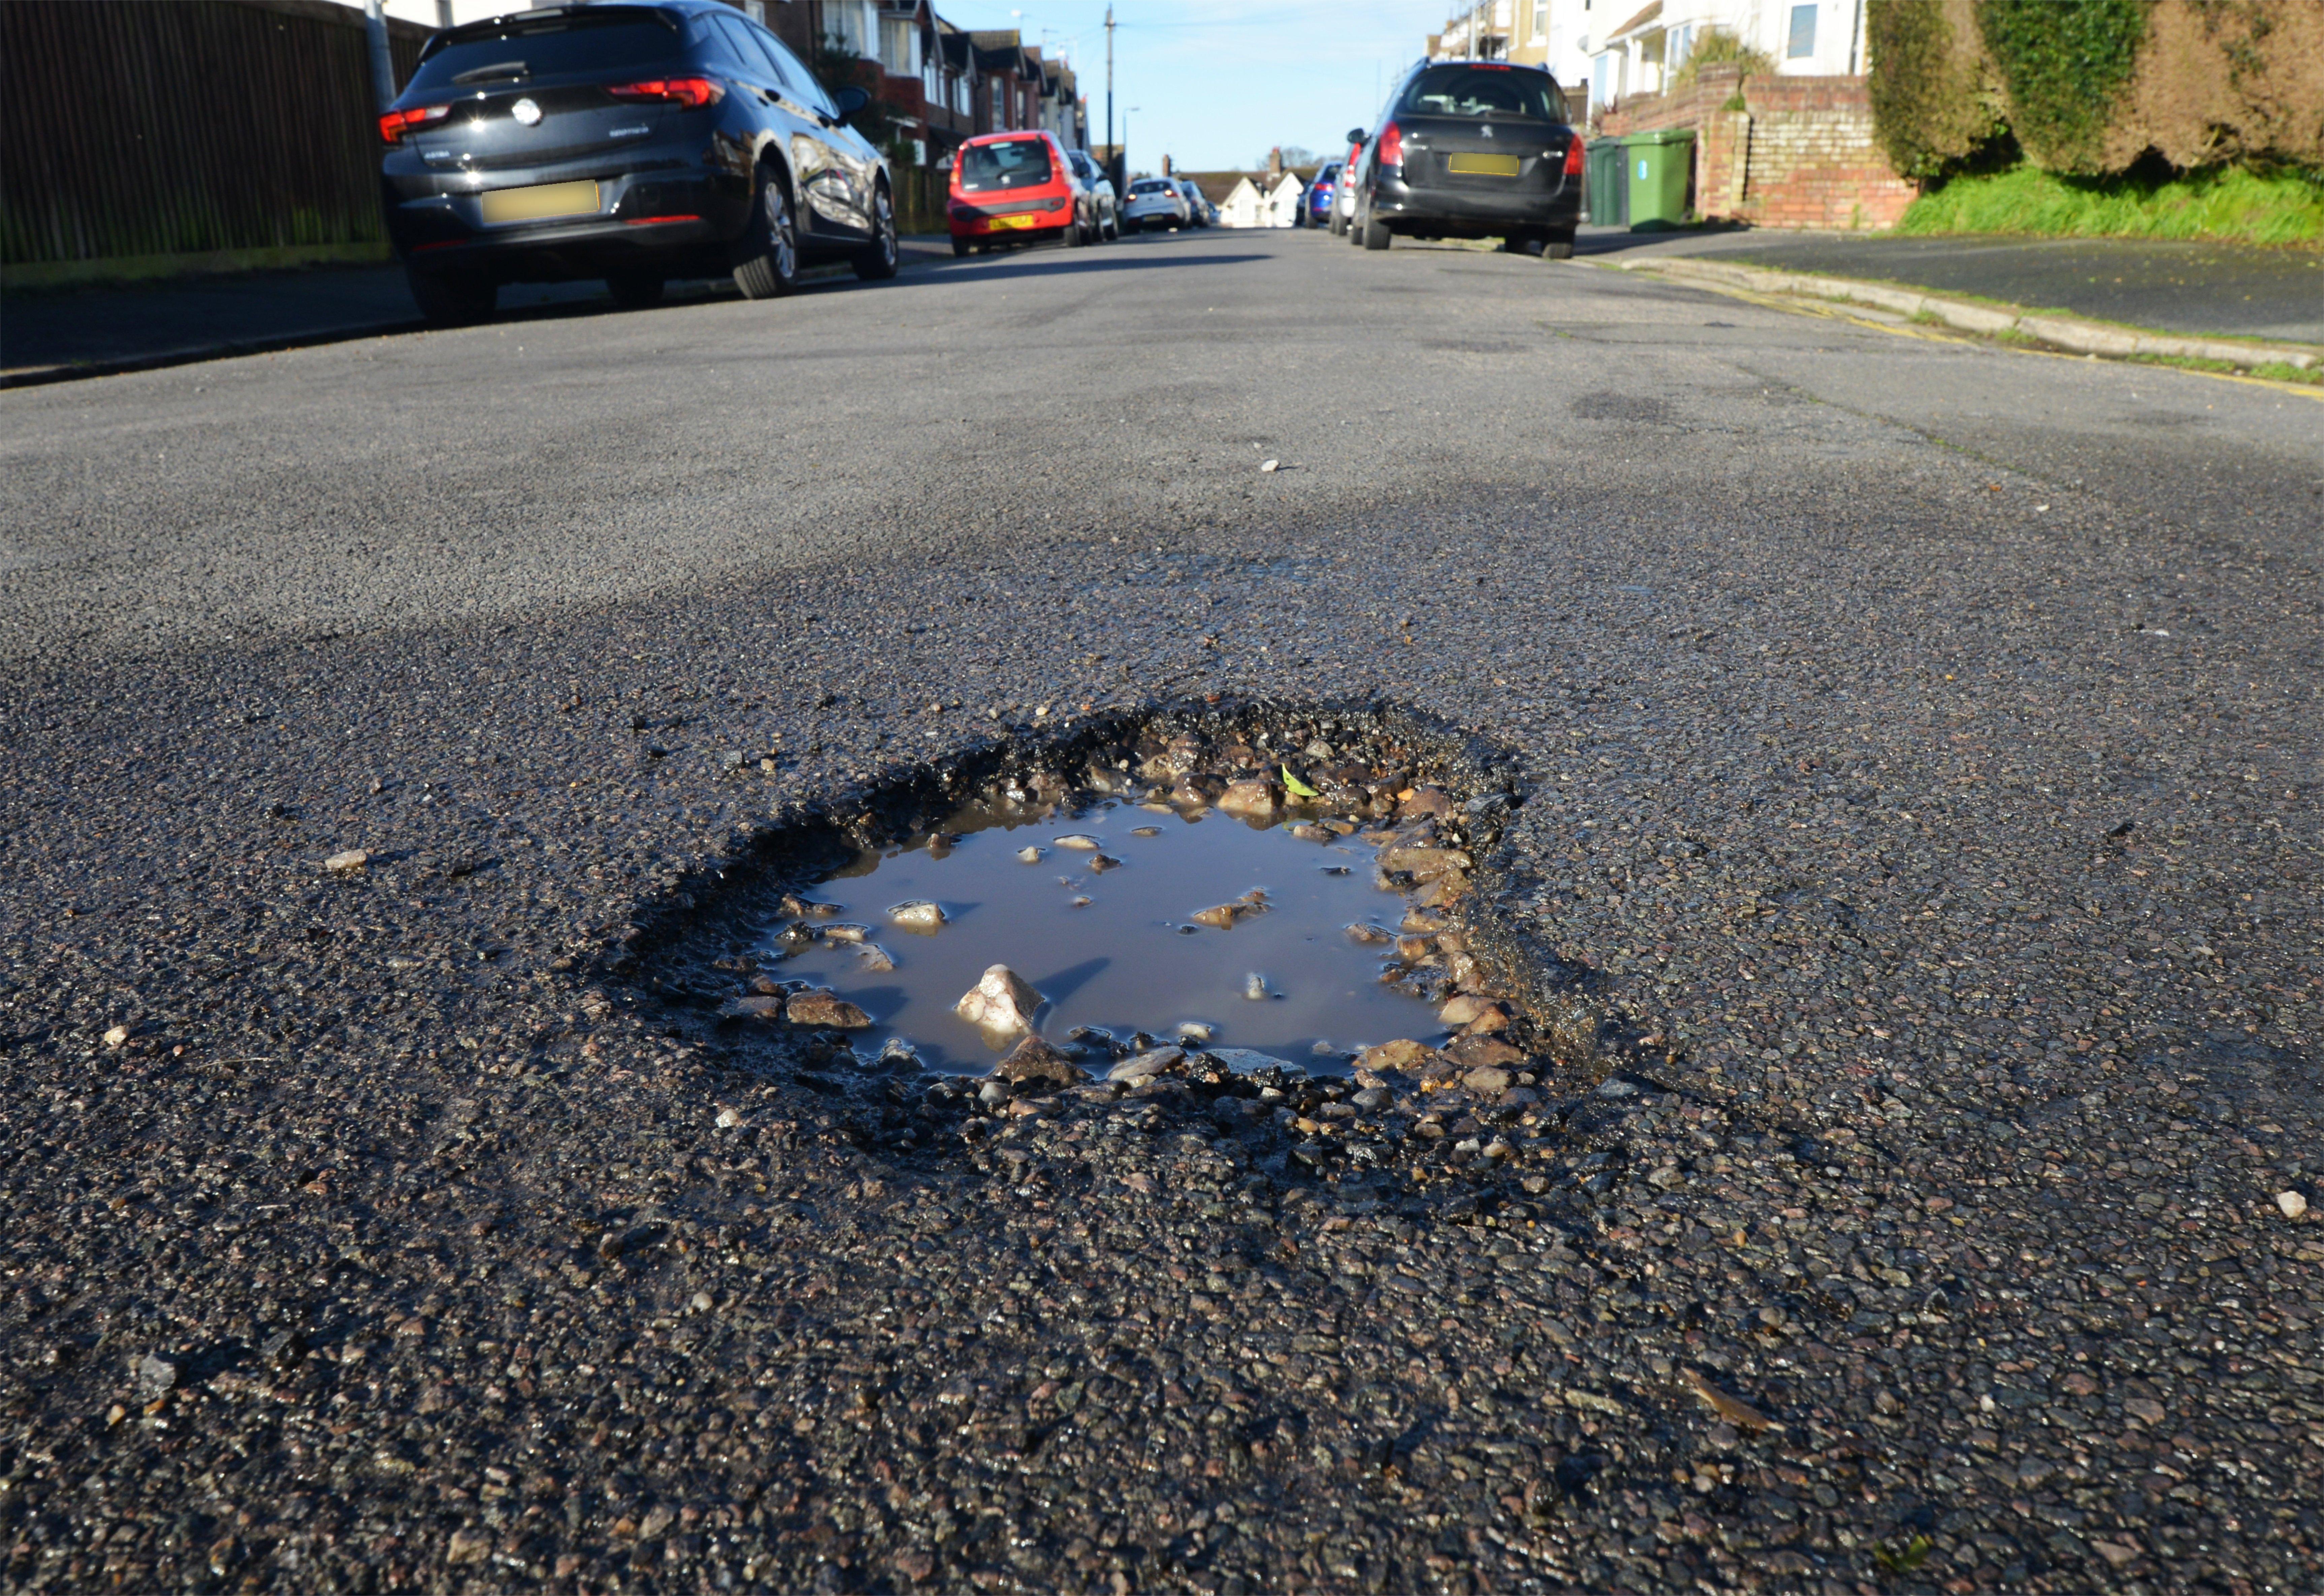 Potholes in Bexhill: Cambridge Road SUS-200128-104032001